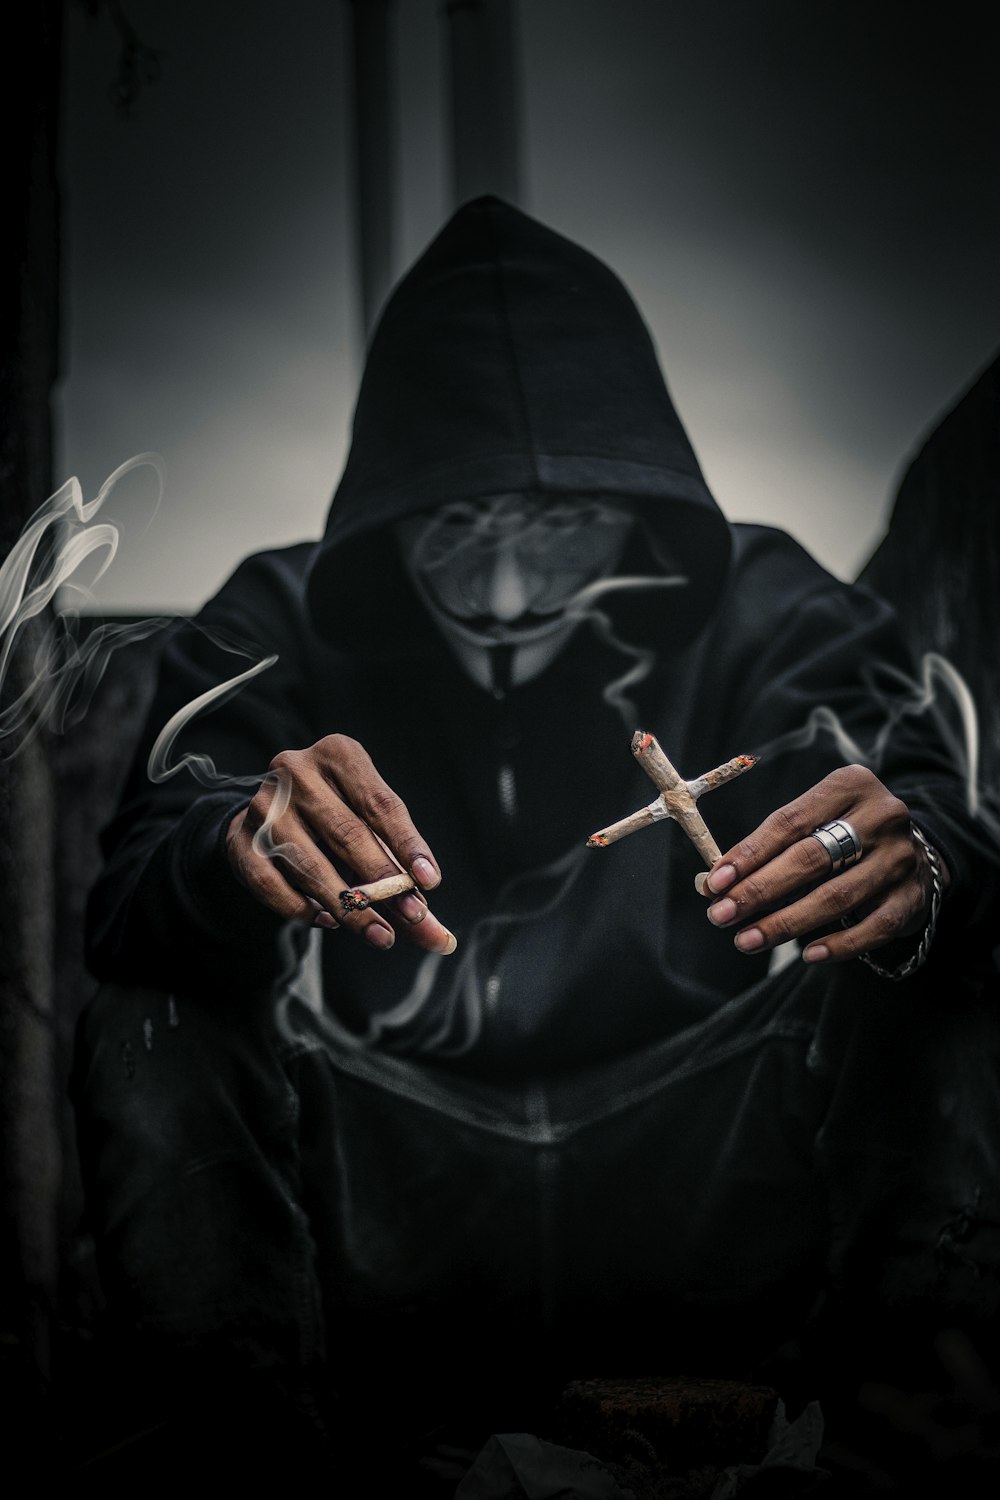 persona con máscara de Guy Fawkes sosteniendo cigarrillos encendidos en forma de cruz a su izquierda con joice encendida en la mano derecha